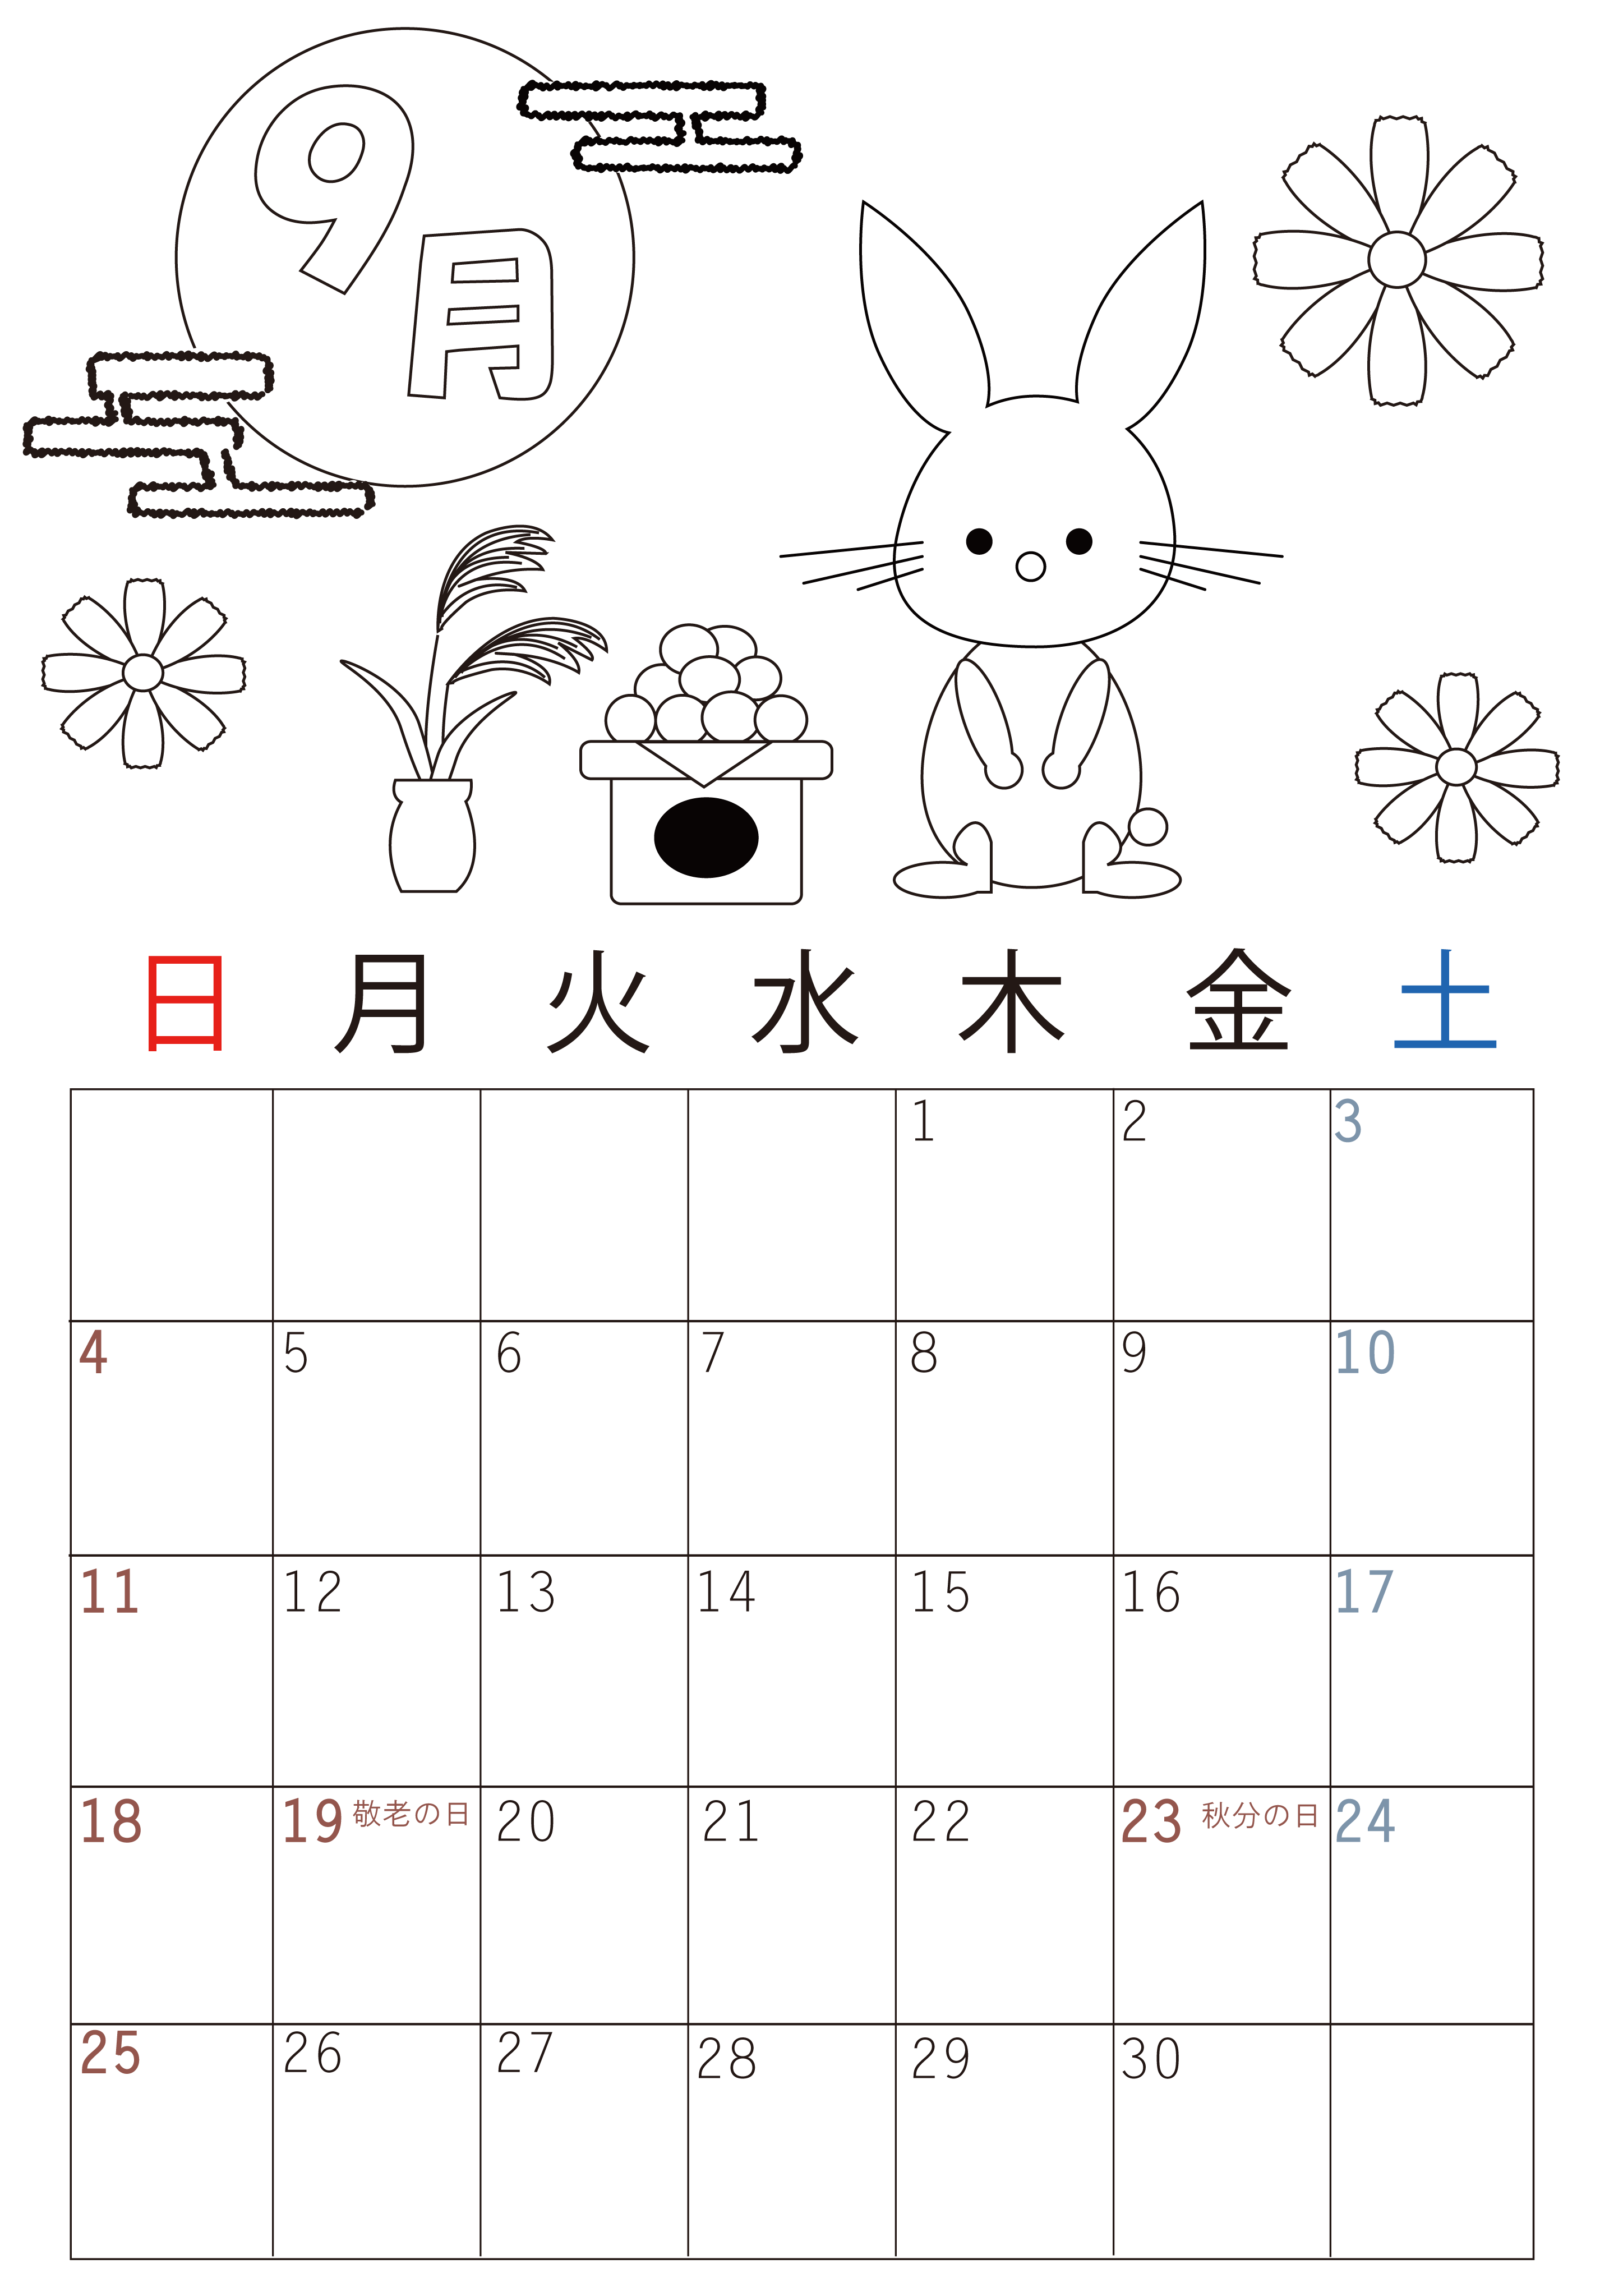 月見団子がおいしそうな塗り絵カレンダー22年9月はシンプル ダウンロード無料 素材デザイン王